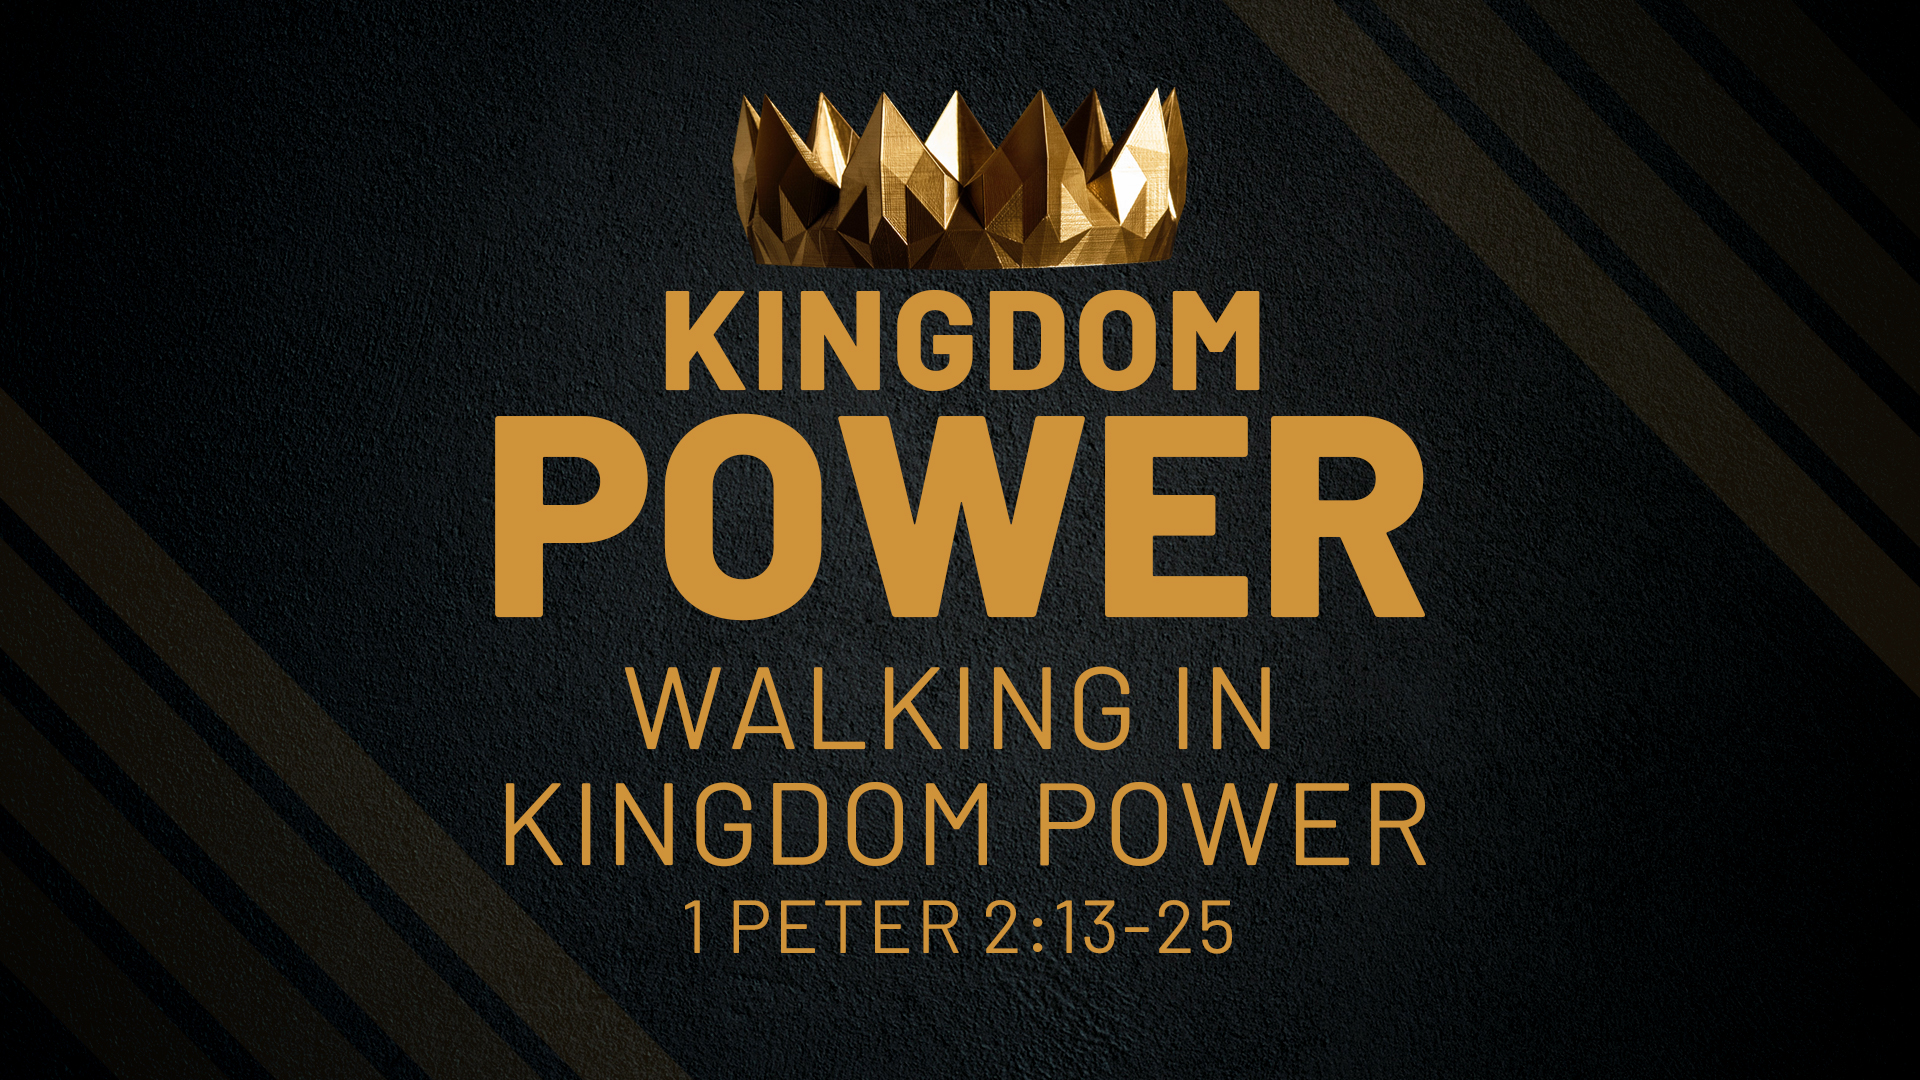 Walking in Kingdom Power